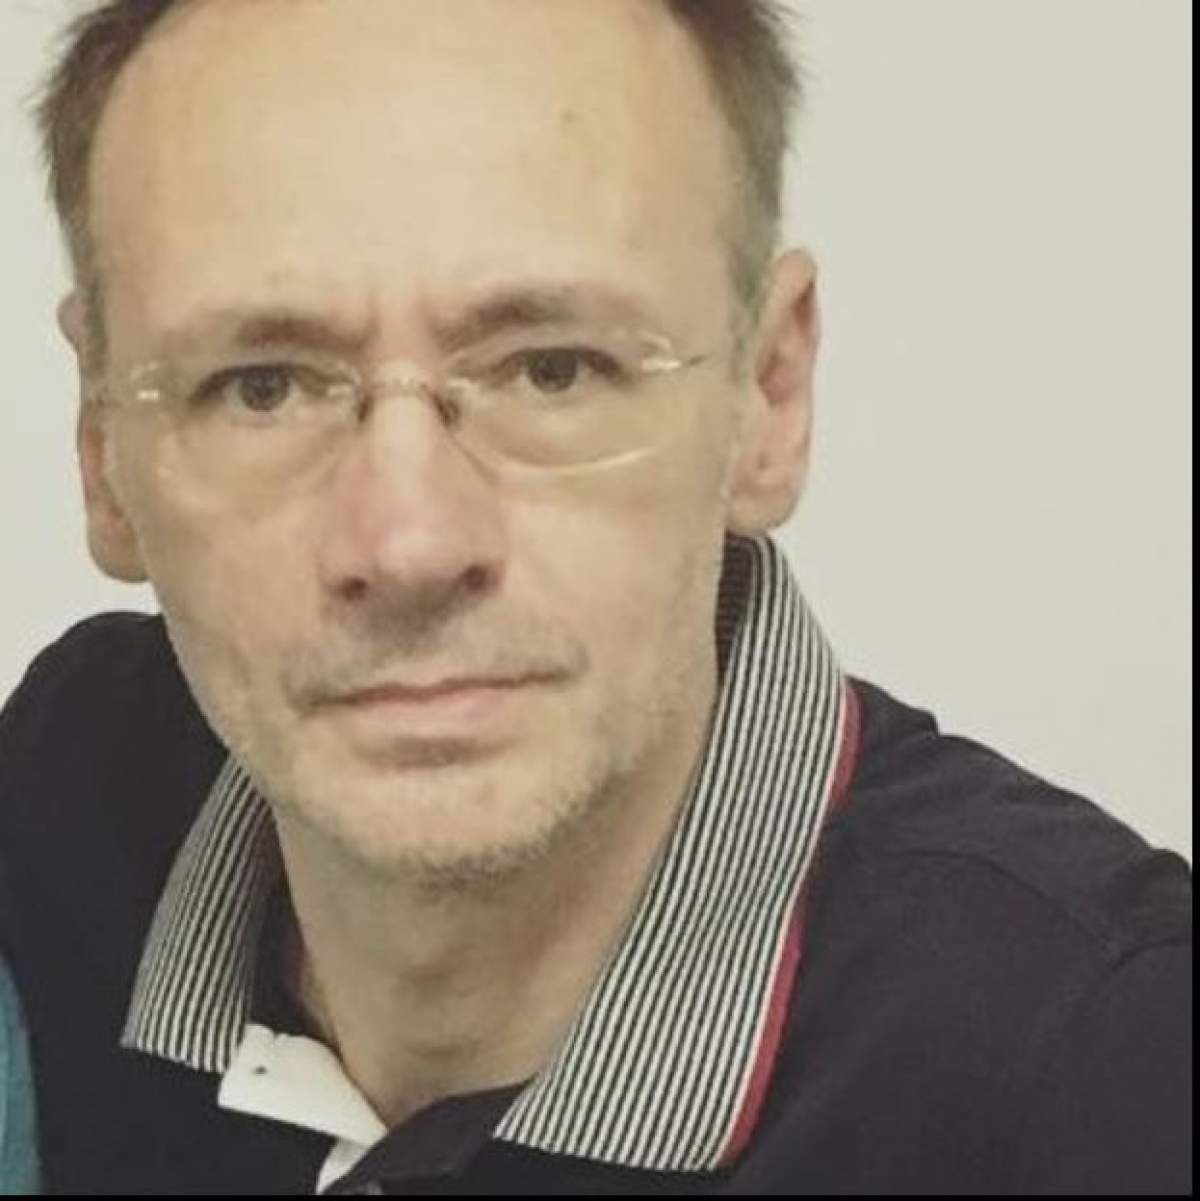 Mihai Albu poarta un tricou negru cu un guler cu model, poarta ochelari de vedere